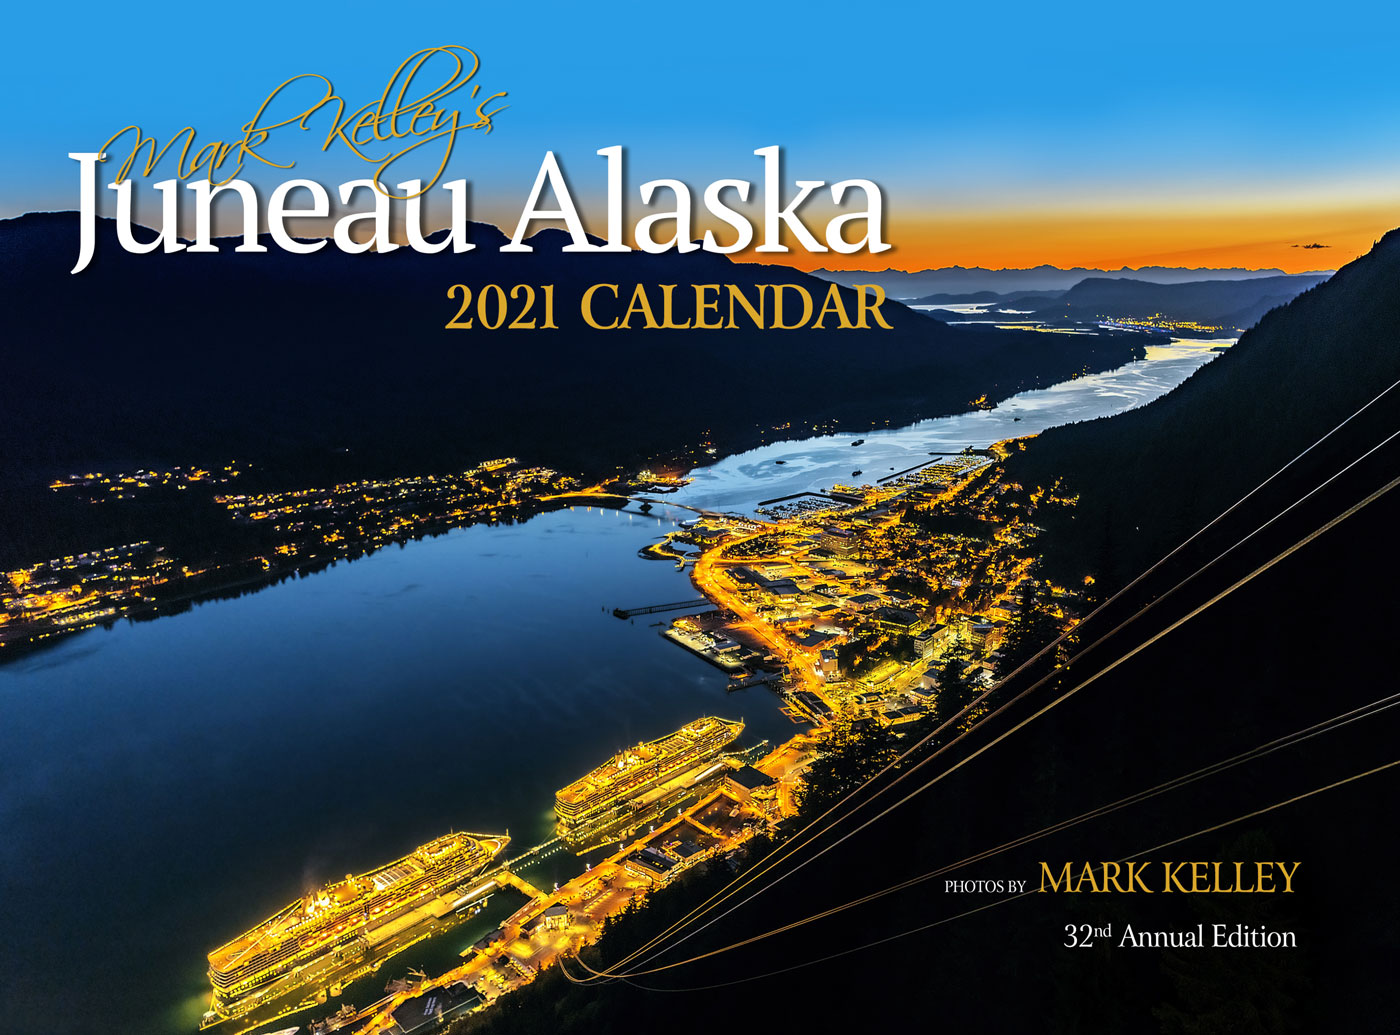 The 2021 Juneau, Alaska Calendar